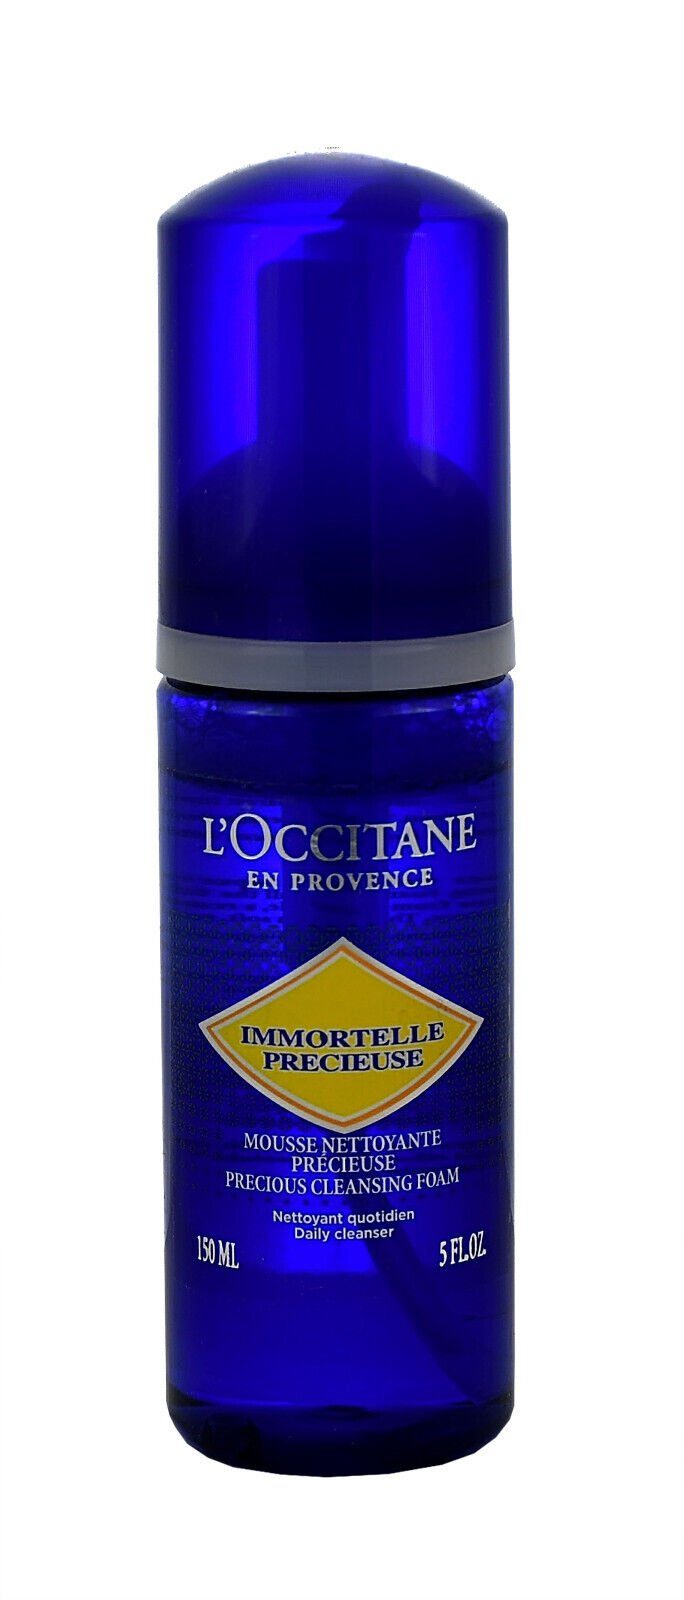 L'OCCITANE Gesichts-Reinigungsschaum 150ml L'occitane Précieuse Mousse Nettoyante Immortelle